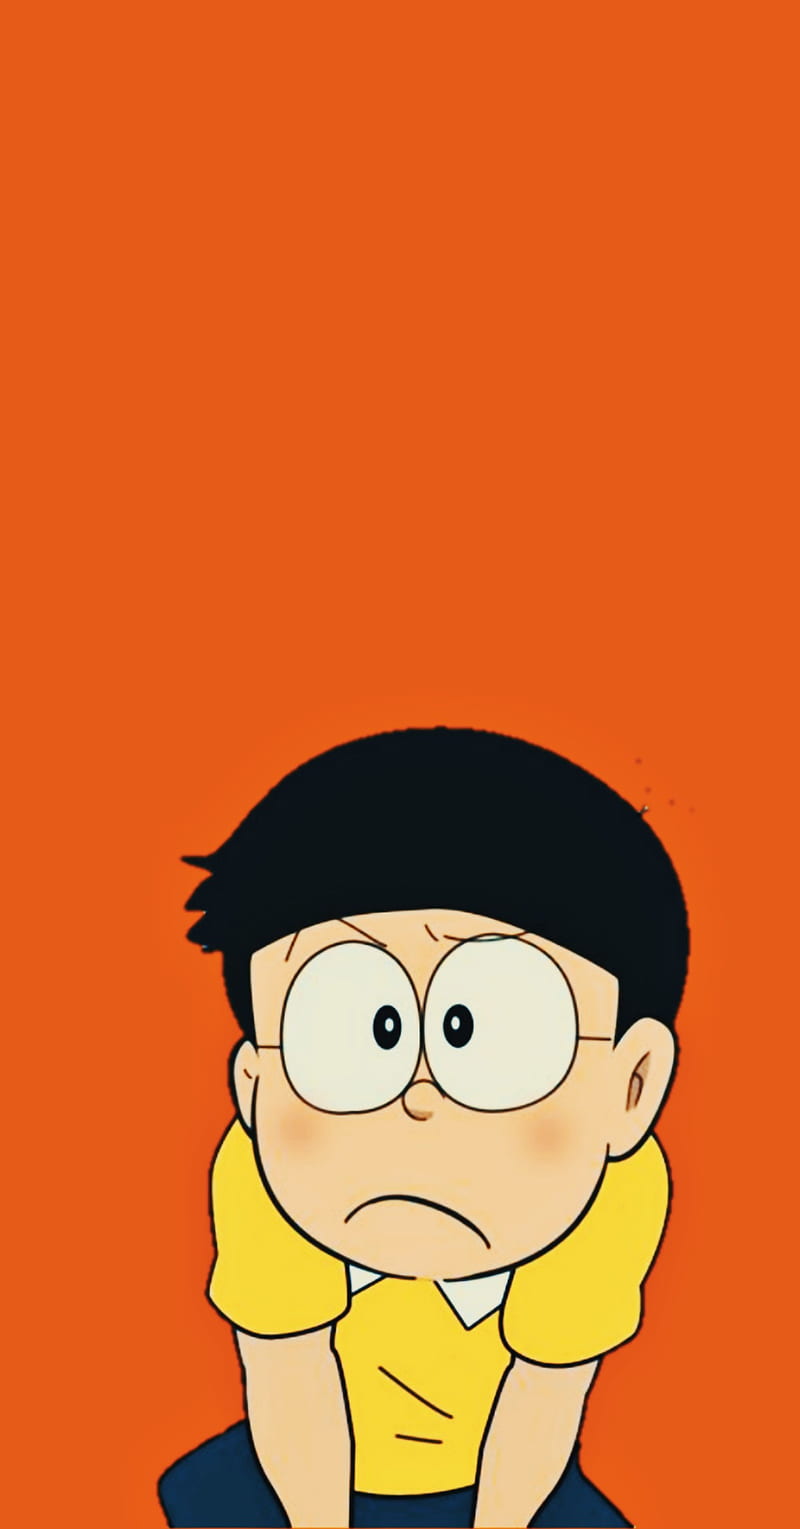 Tổng hợp hình ảnh Nobita đẹp nhất Hình ảnh Hoạt hình Doraemon